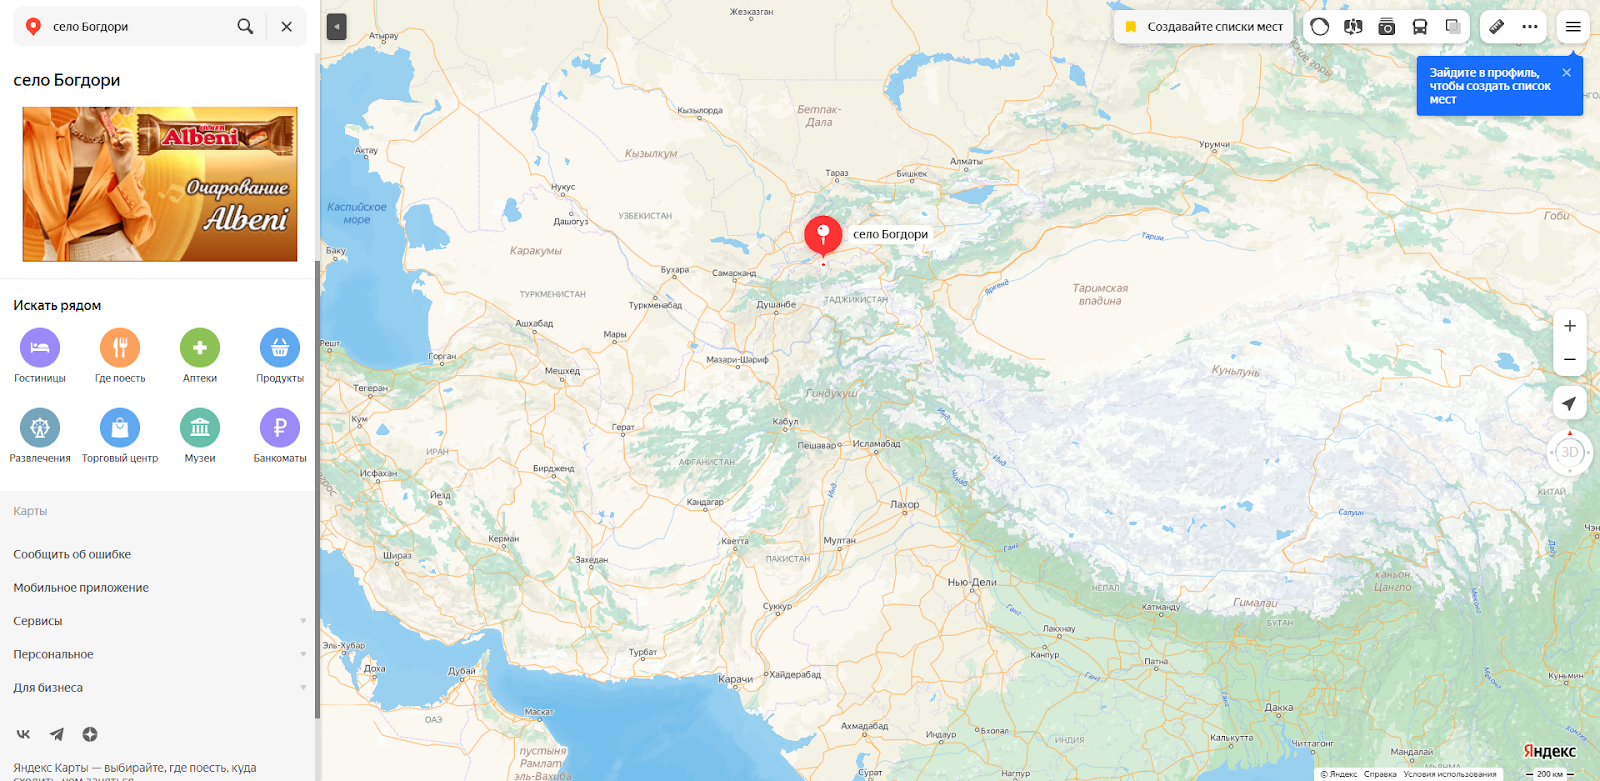 Провокациялык каналдын калпы: “Кыргыздар өздөрү үйлөрүн өрттөп жатышат”